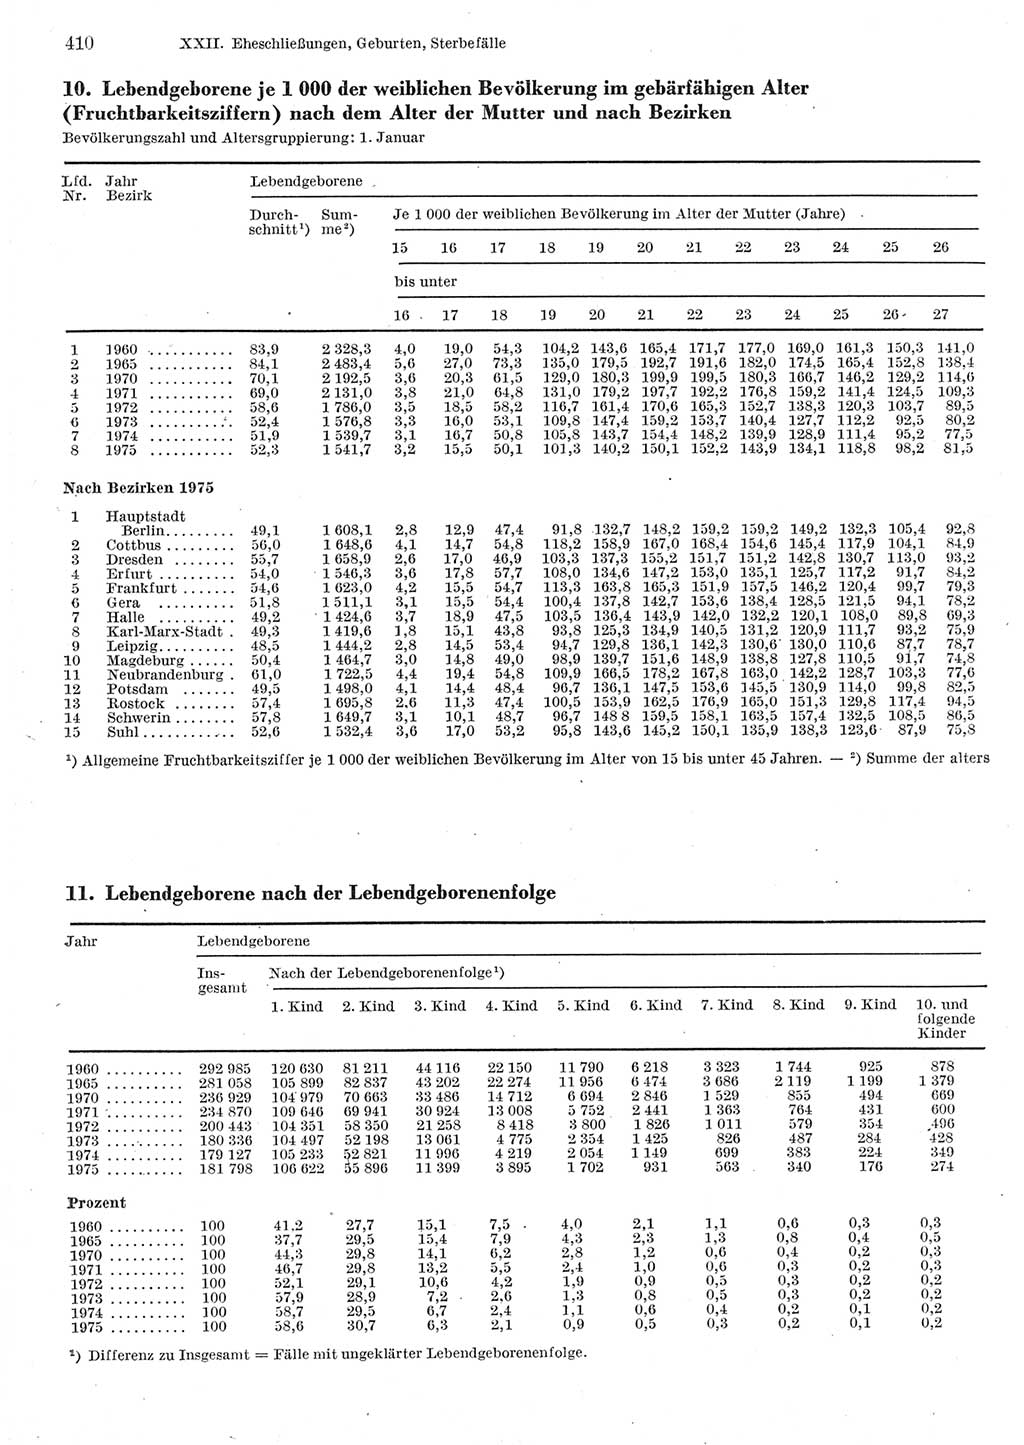 Statistisches Jahrbuch der Deutschen Demokratischen Republik (DDR) 1977, Seite 410 (Stat. Jb. DDR 1977, S. 410)